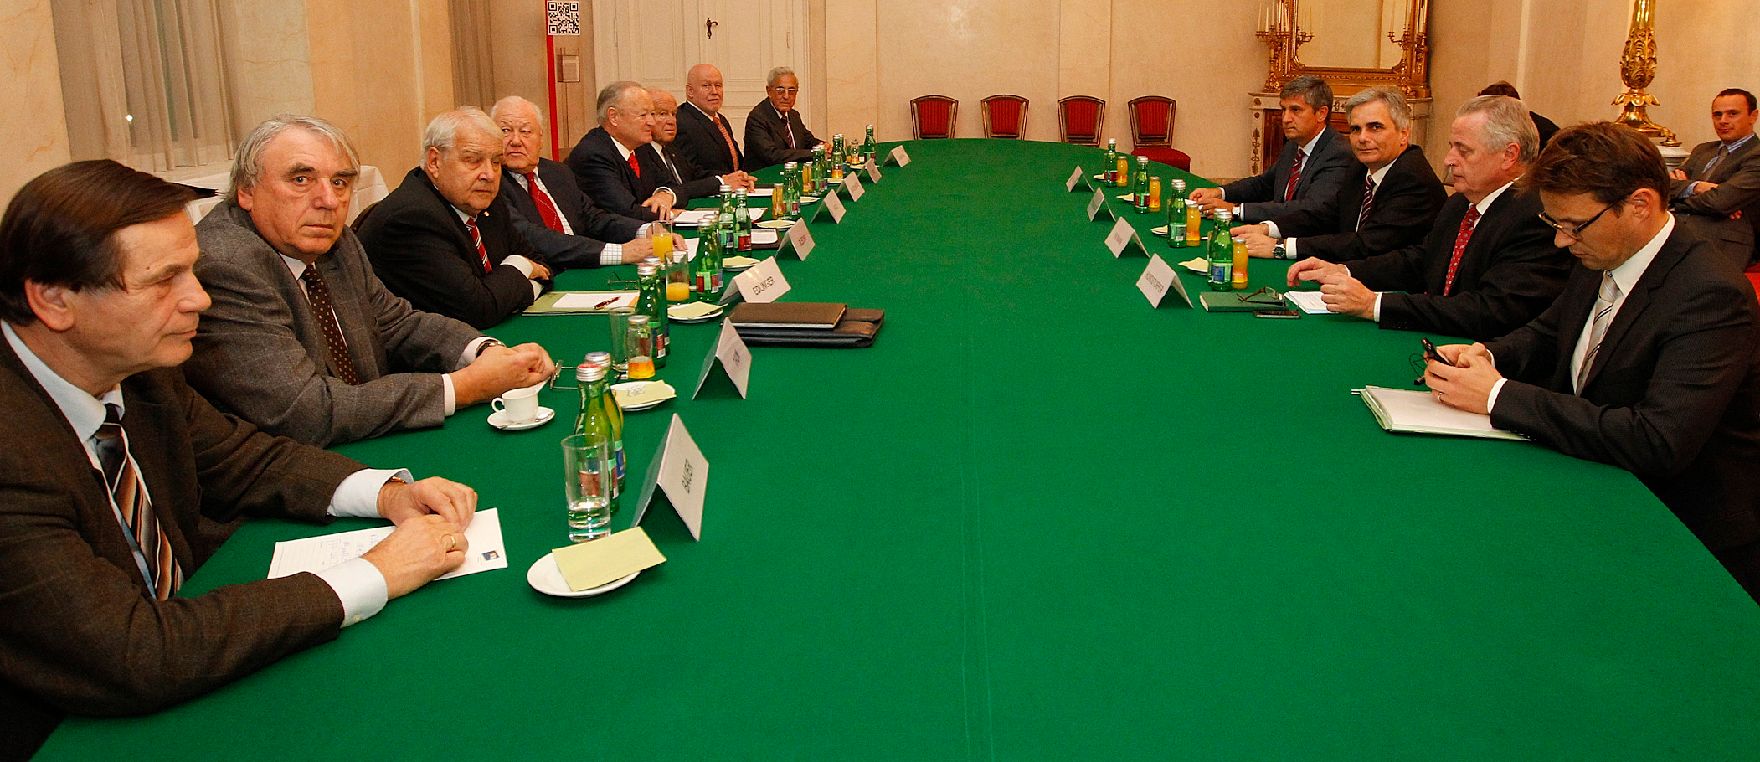 Am 14. November 2011 traf Bundeskanzler Werner Faymann mit Seniorenvertretern zu einem Arbeitsgespräch im Bundeskanzleramt zusammen.